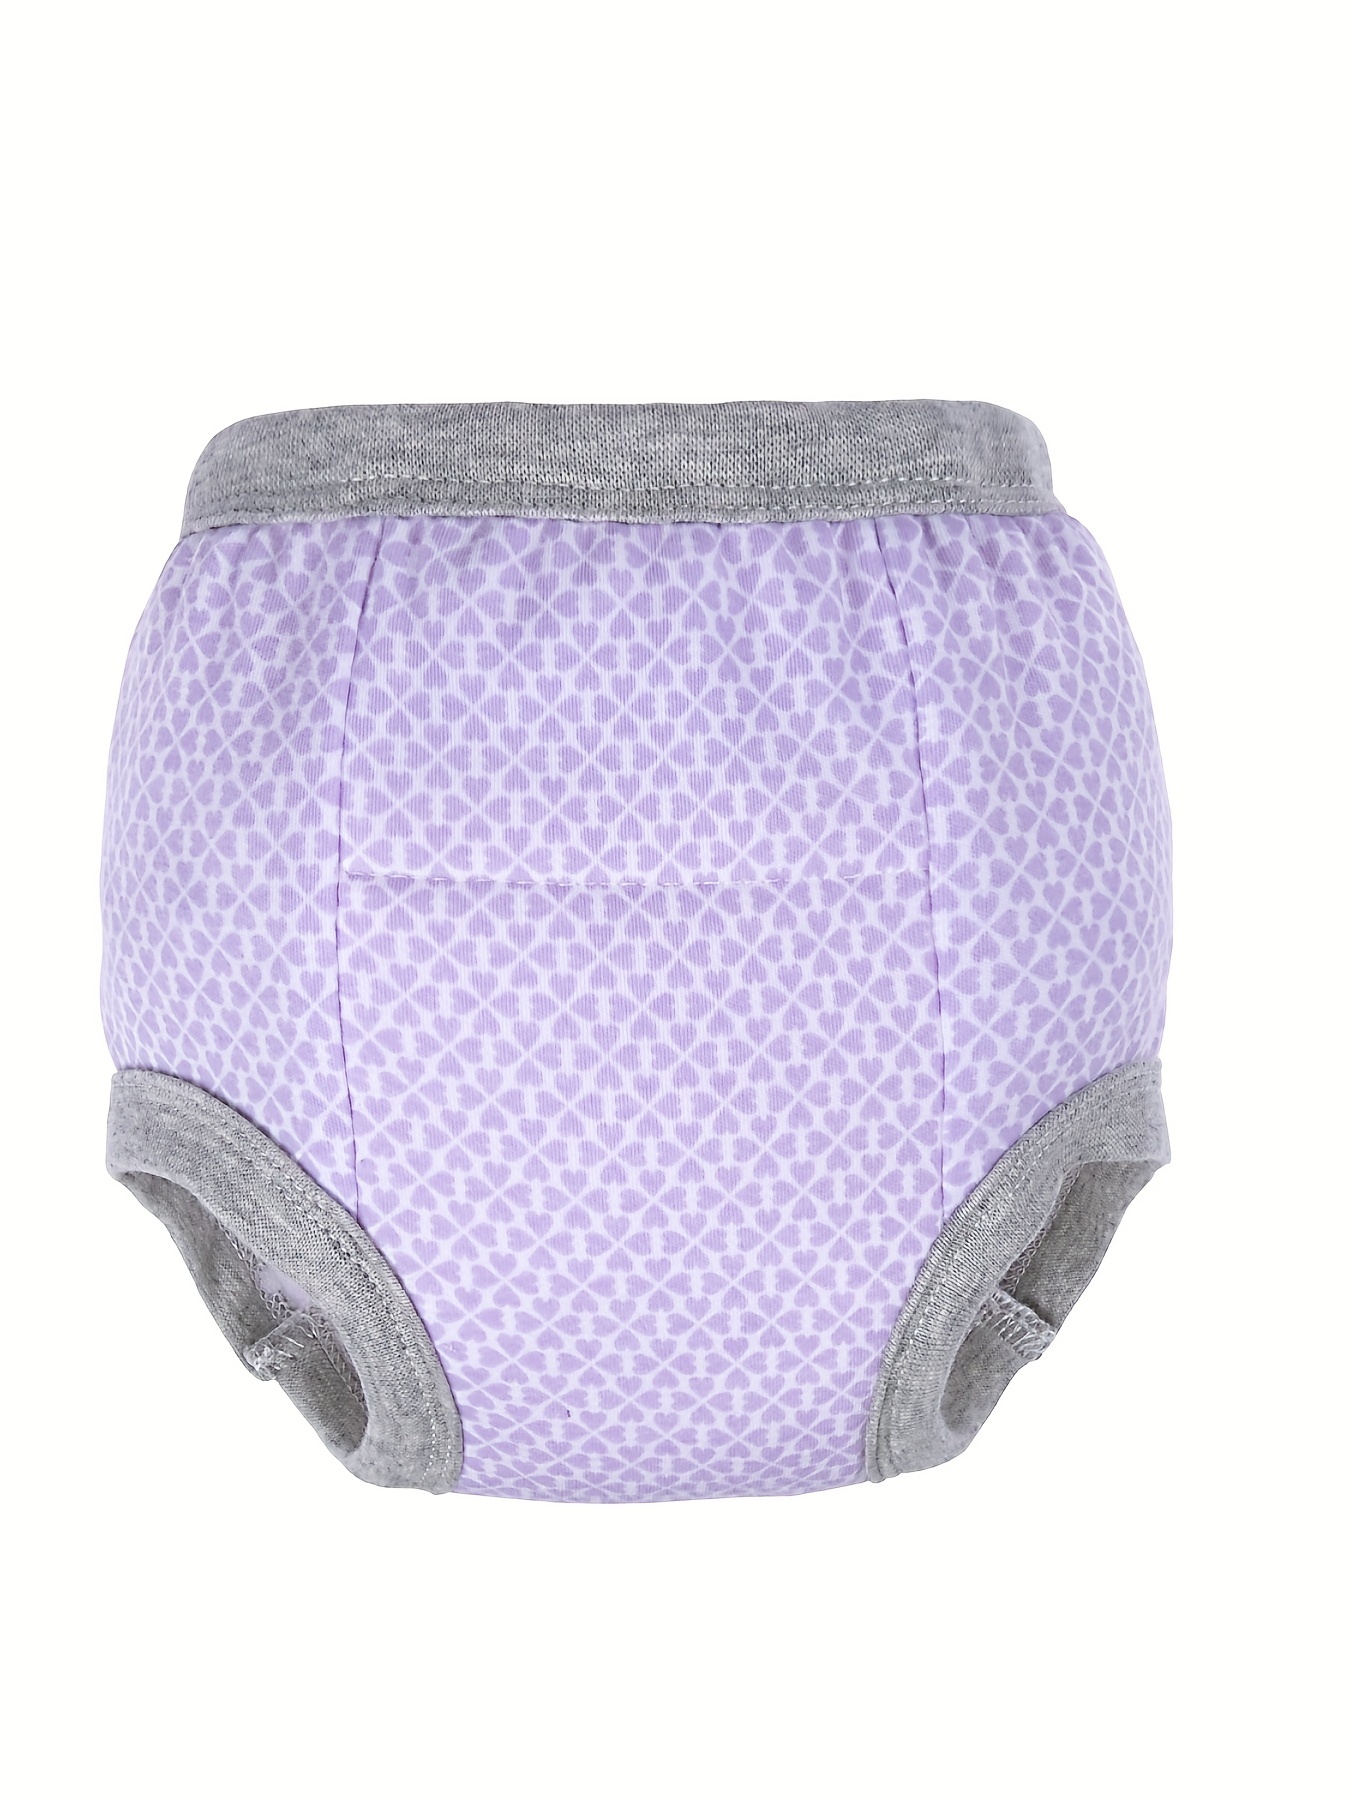 Baby Underwear Covers Diaper, Cotton Underwear Briefs